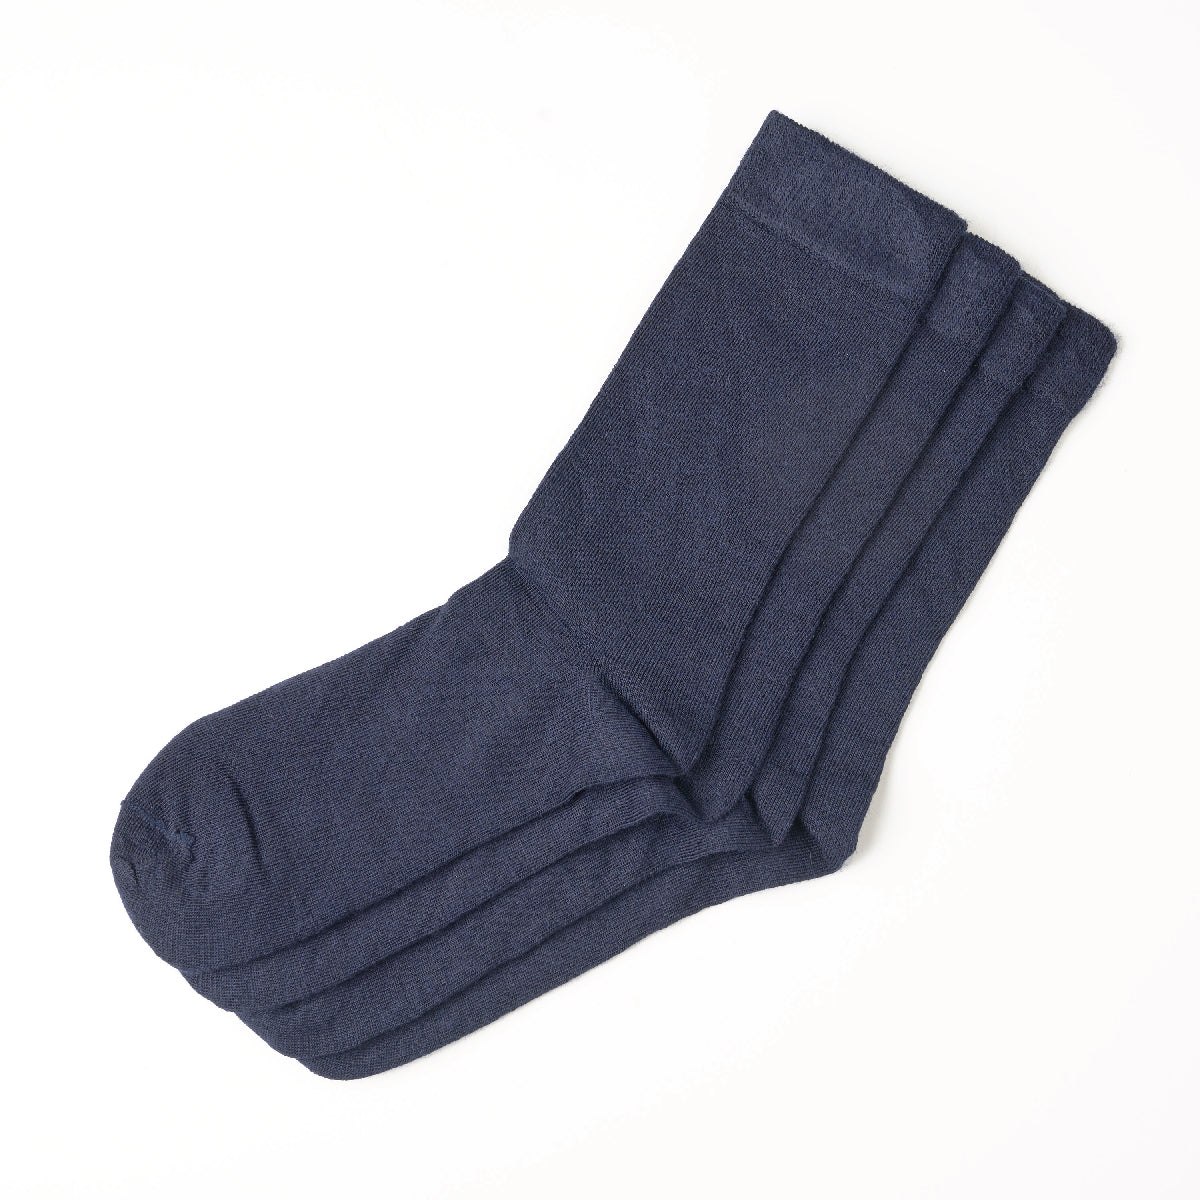 Merino Socks - 2 Pack